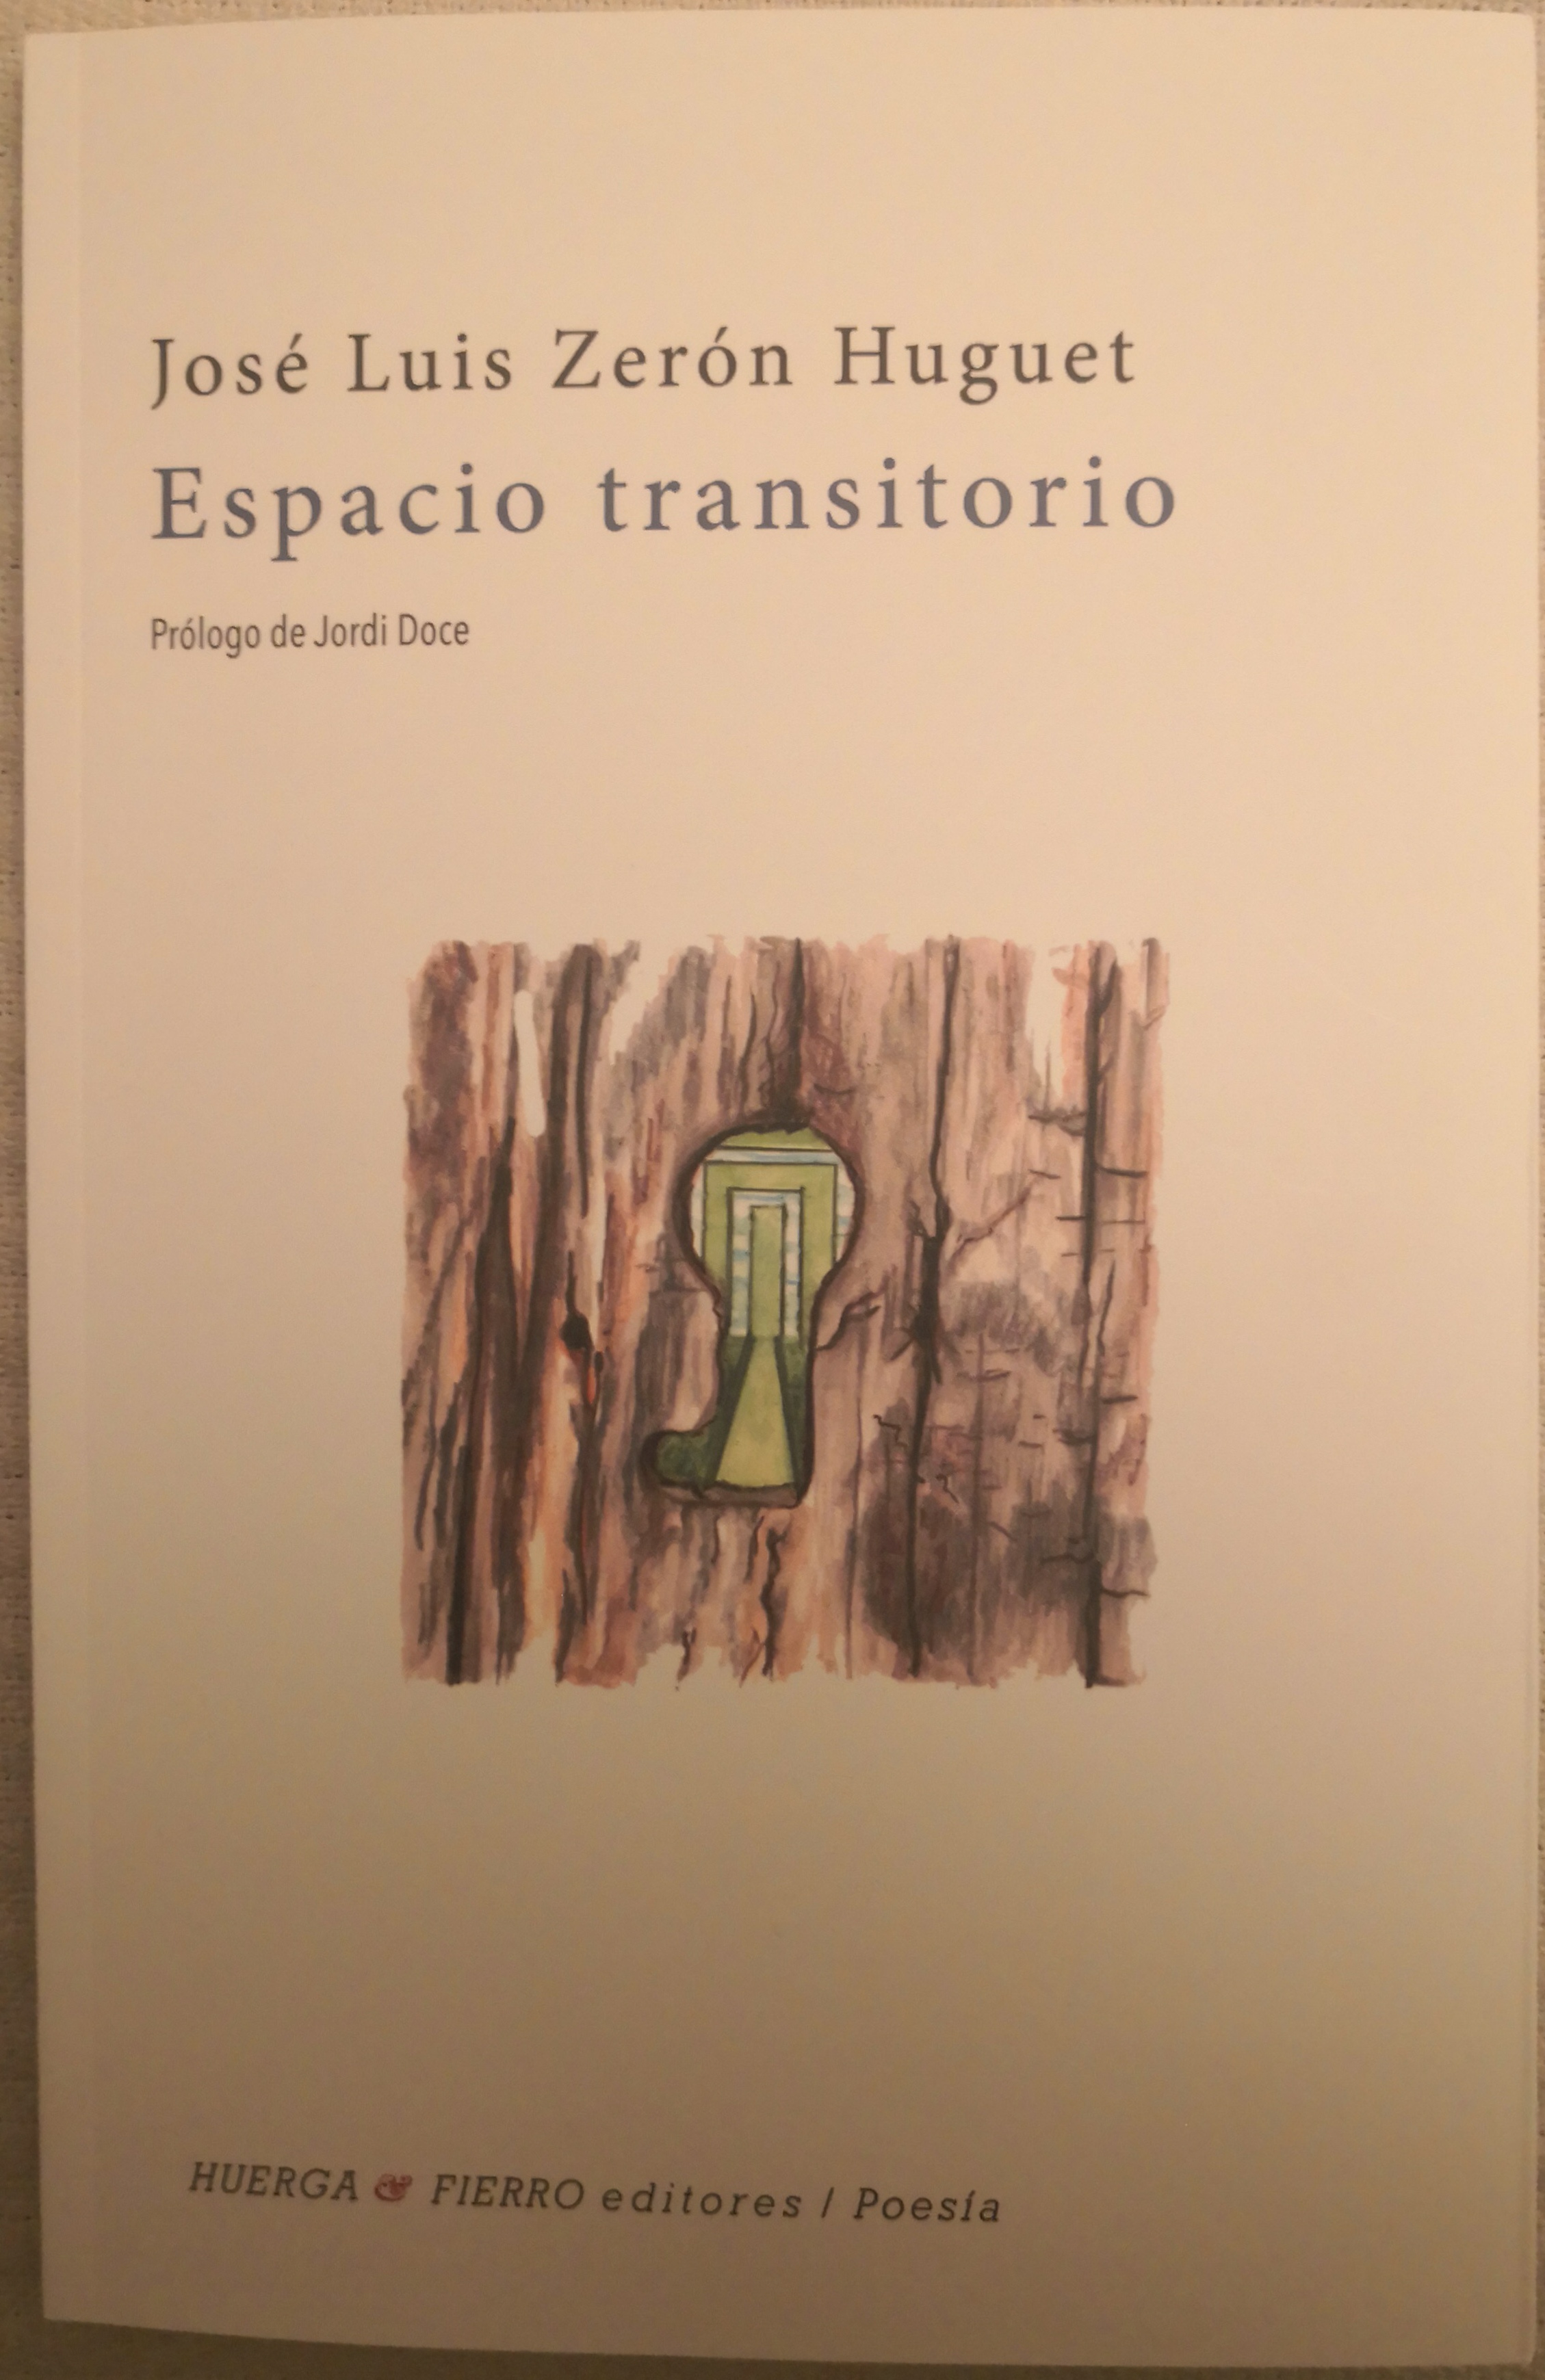 Portada del poemario «Espacio transitorio», de José Luis Zerón Huguet